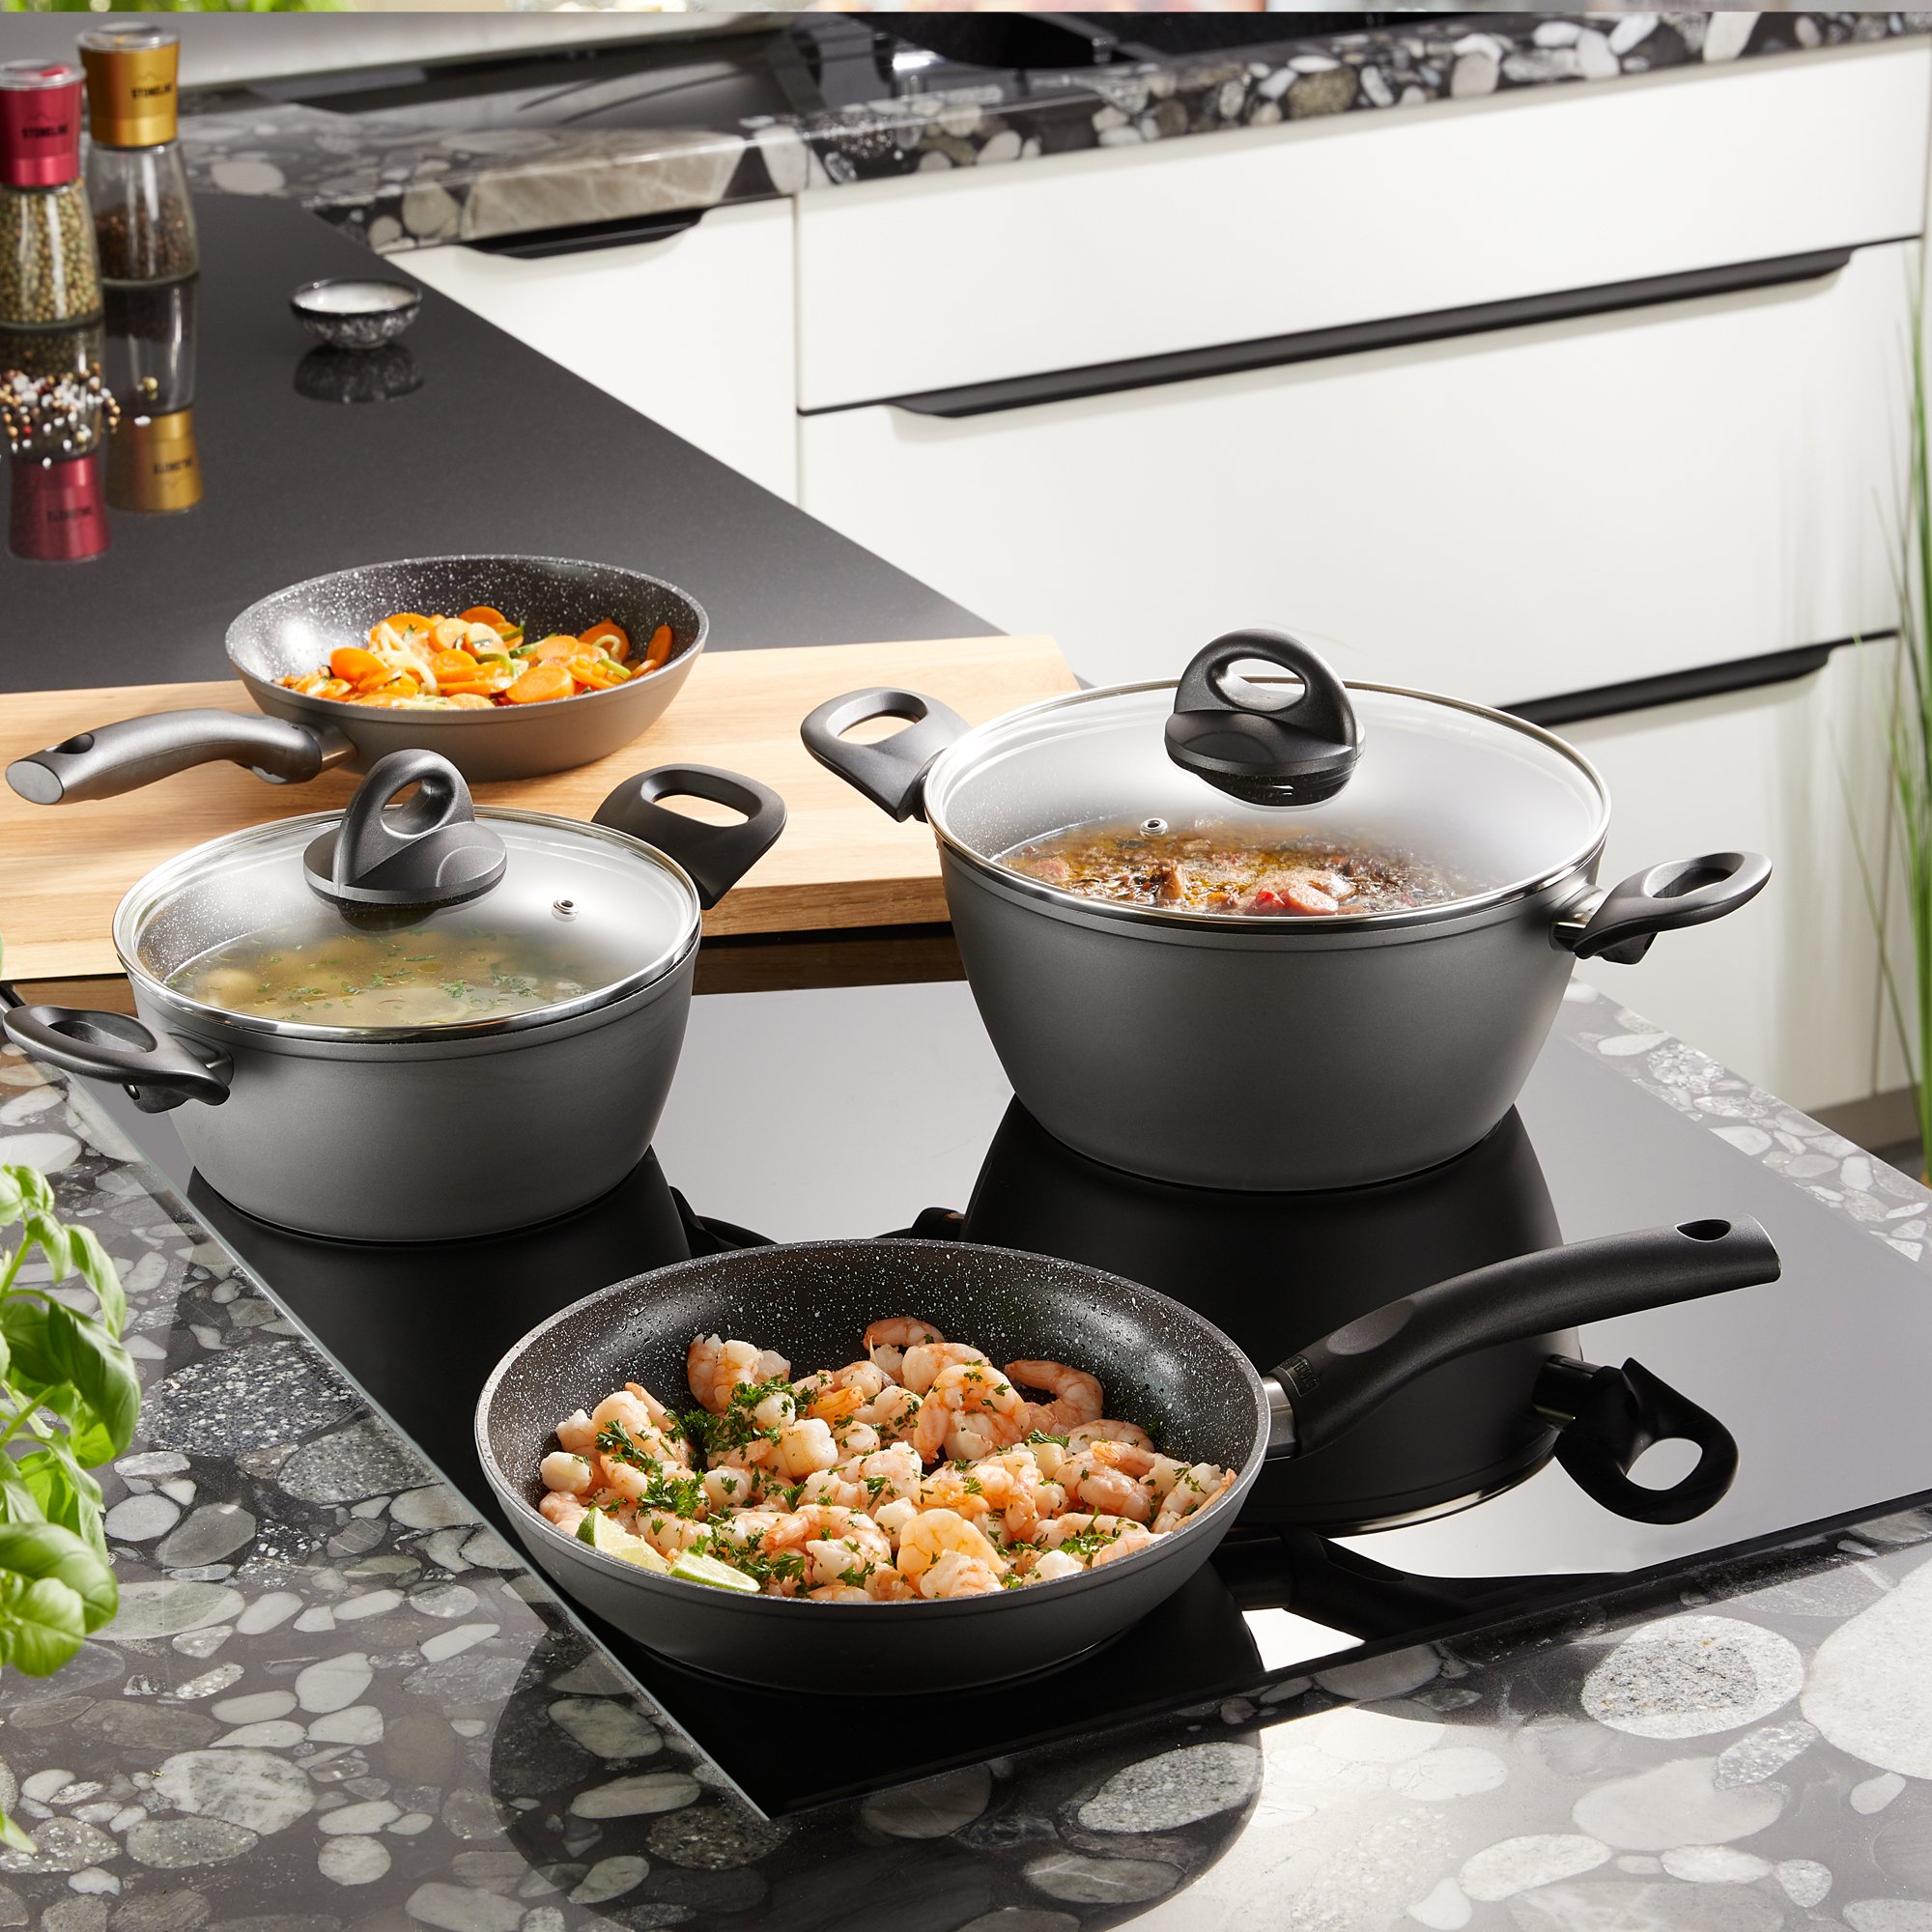 STONELINE® 16 pc CERAMIC Cookware Set, with Lids, Non-Stick Pots & Pans | CERAMIC